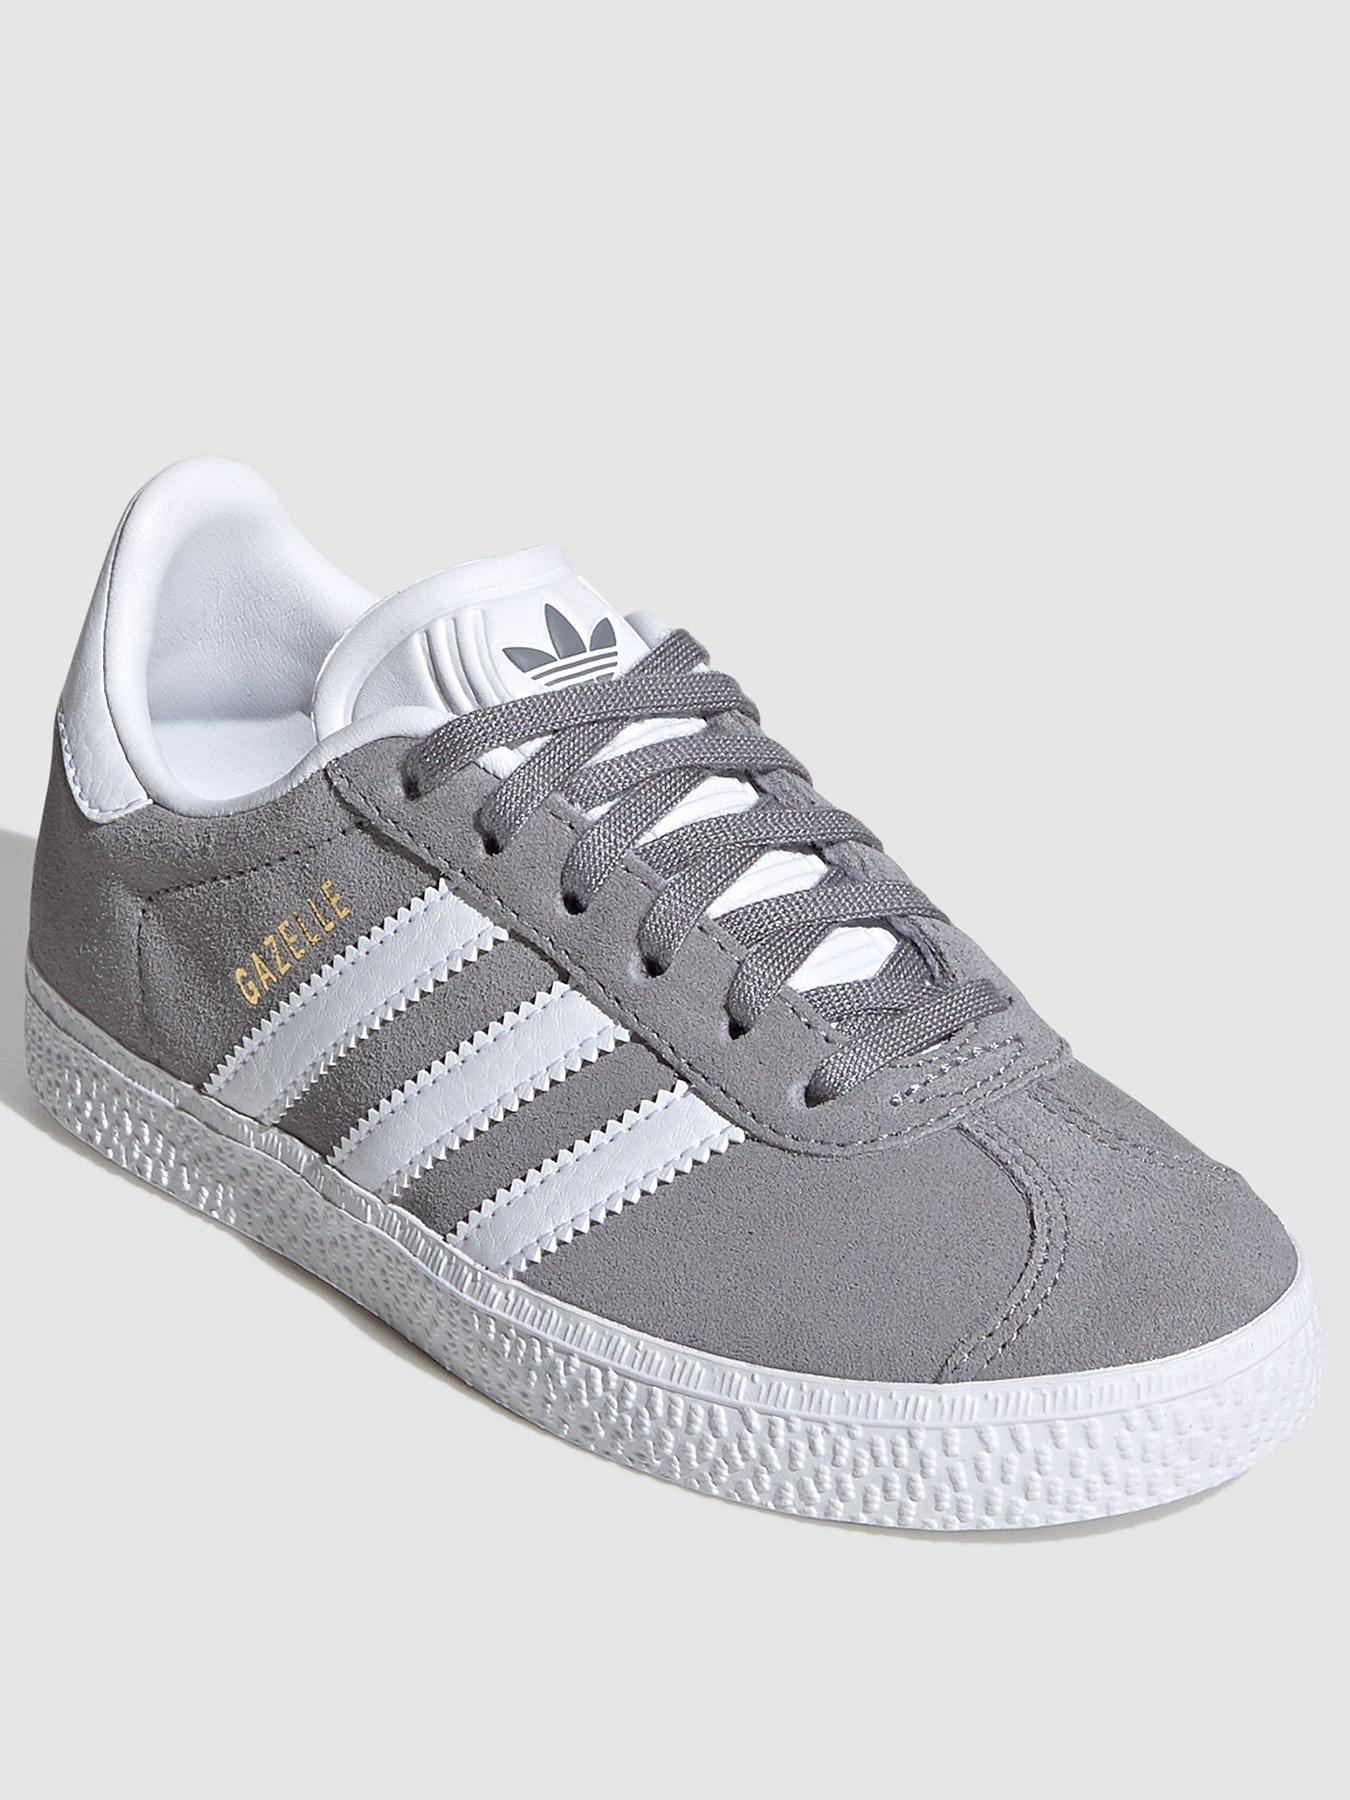 adidas classic grey